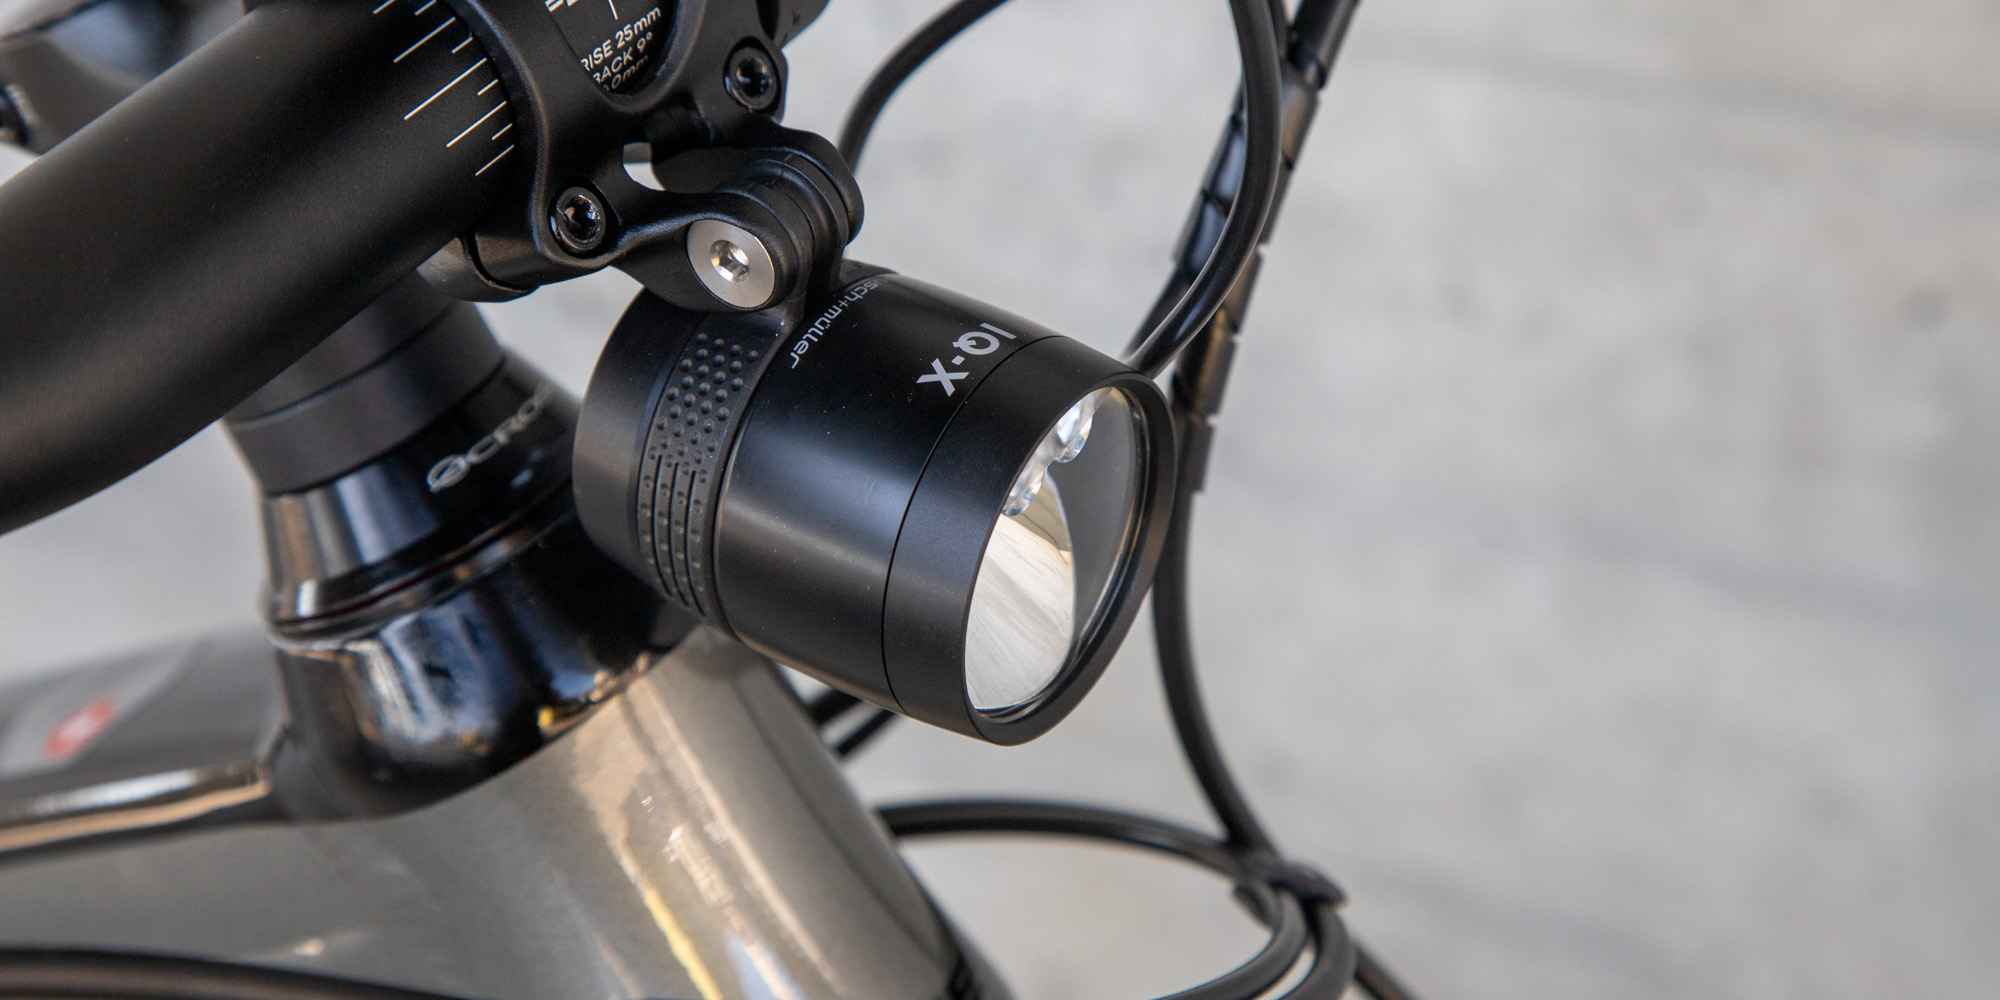 Stabile Halterung für eine Taschenlampe an Fahrrad oder Roller